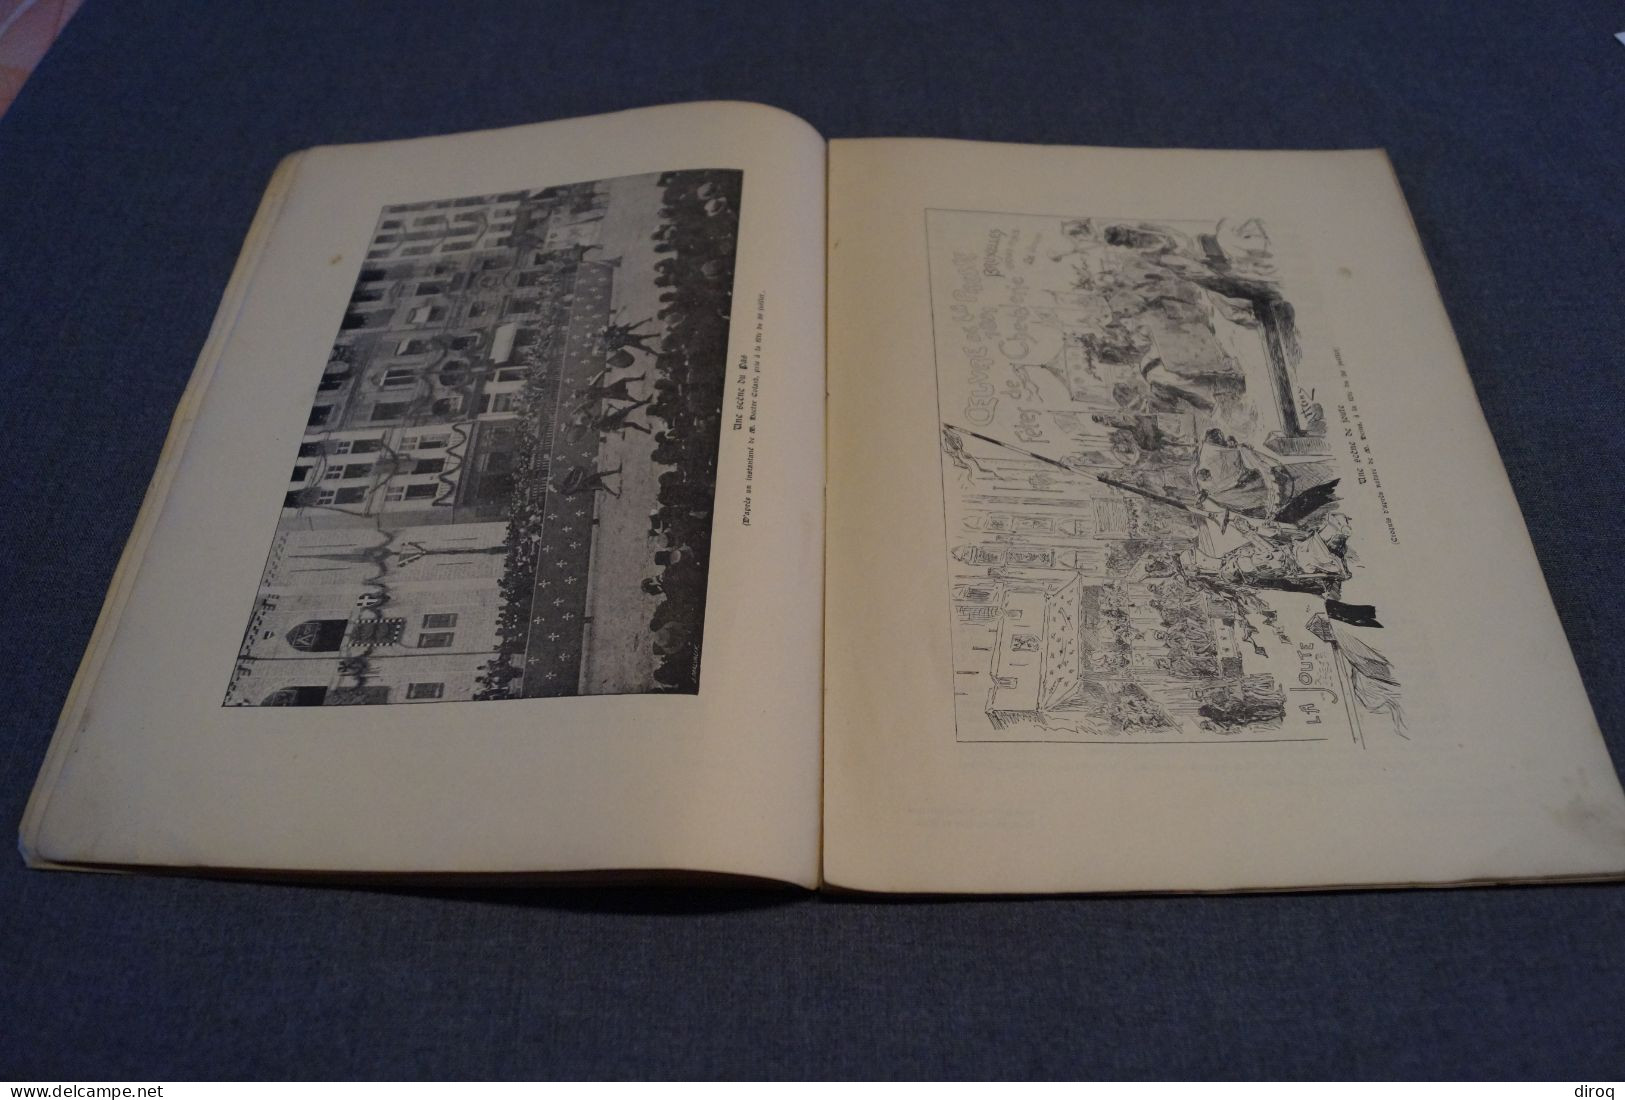 RARE,Bruxelles fêtes de la chevalerie 1891, 52 pages, 28 Cm. sur 21,5 Cm.